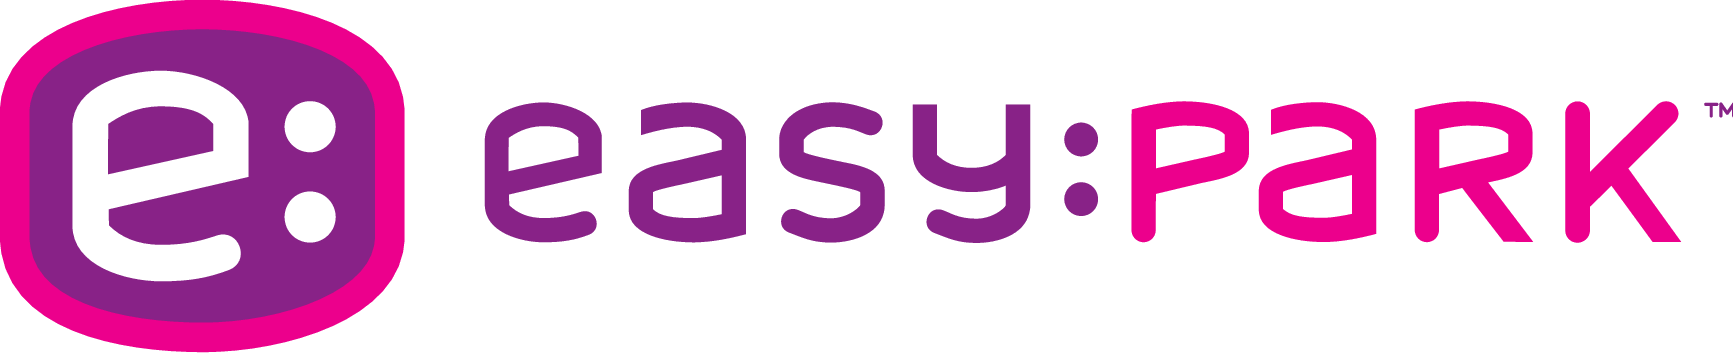 E1-logo-easypark